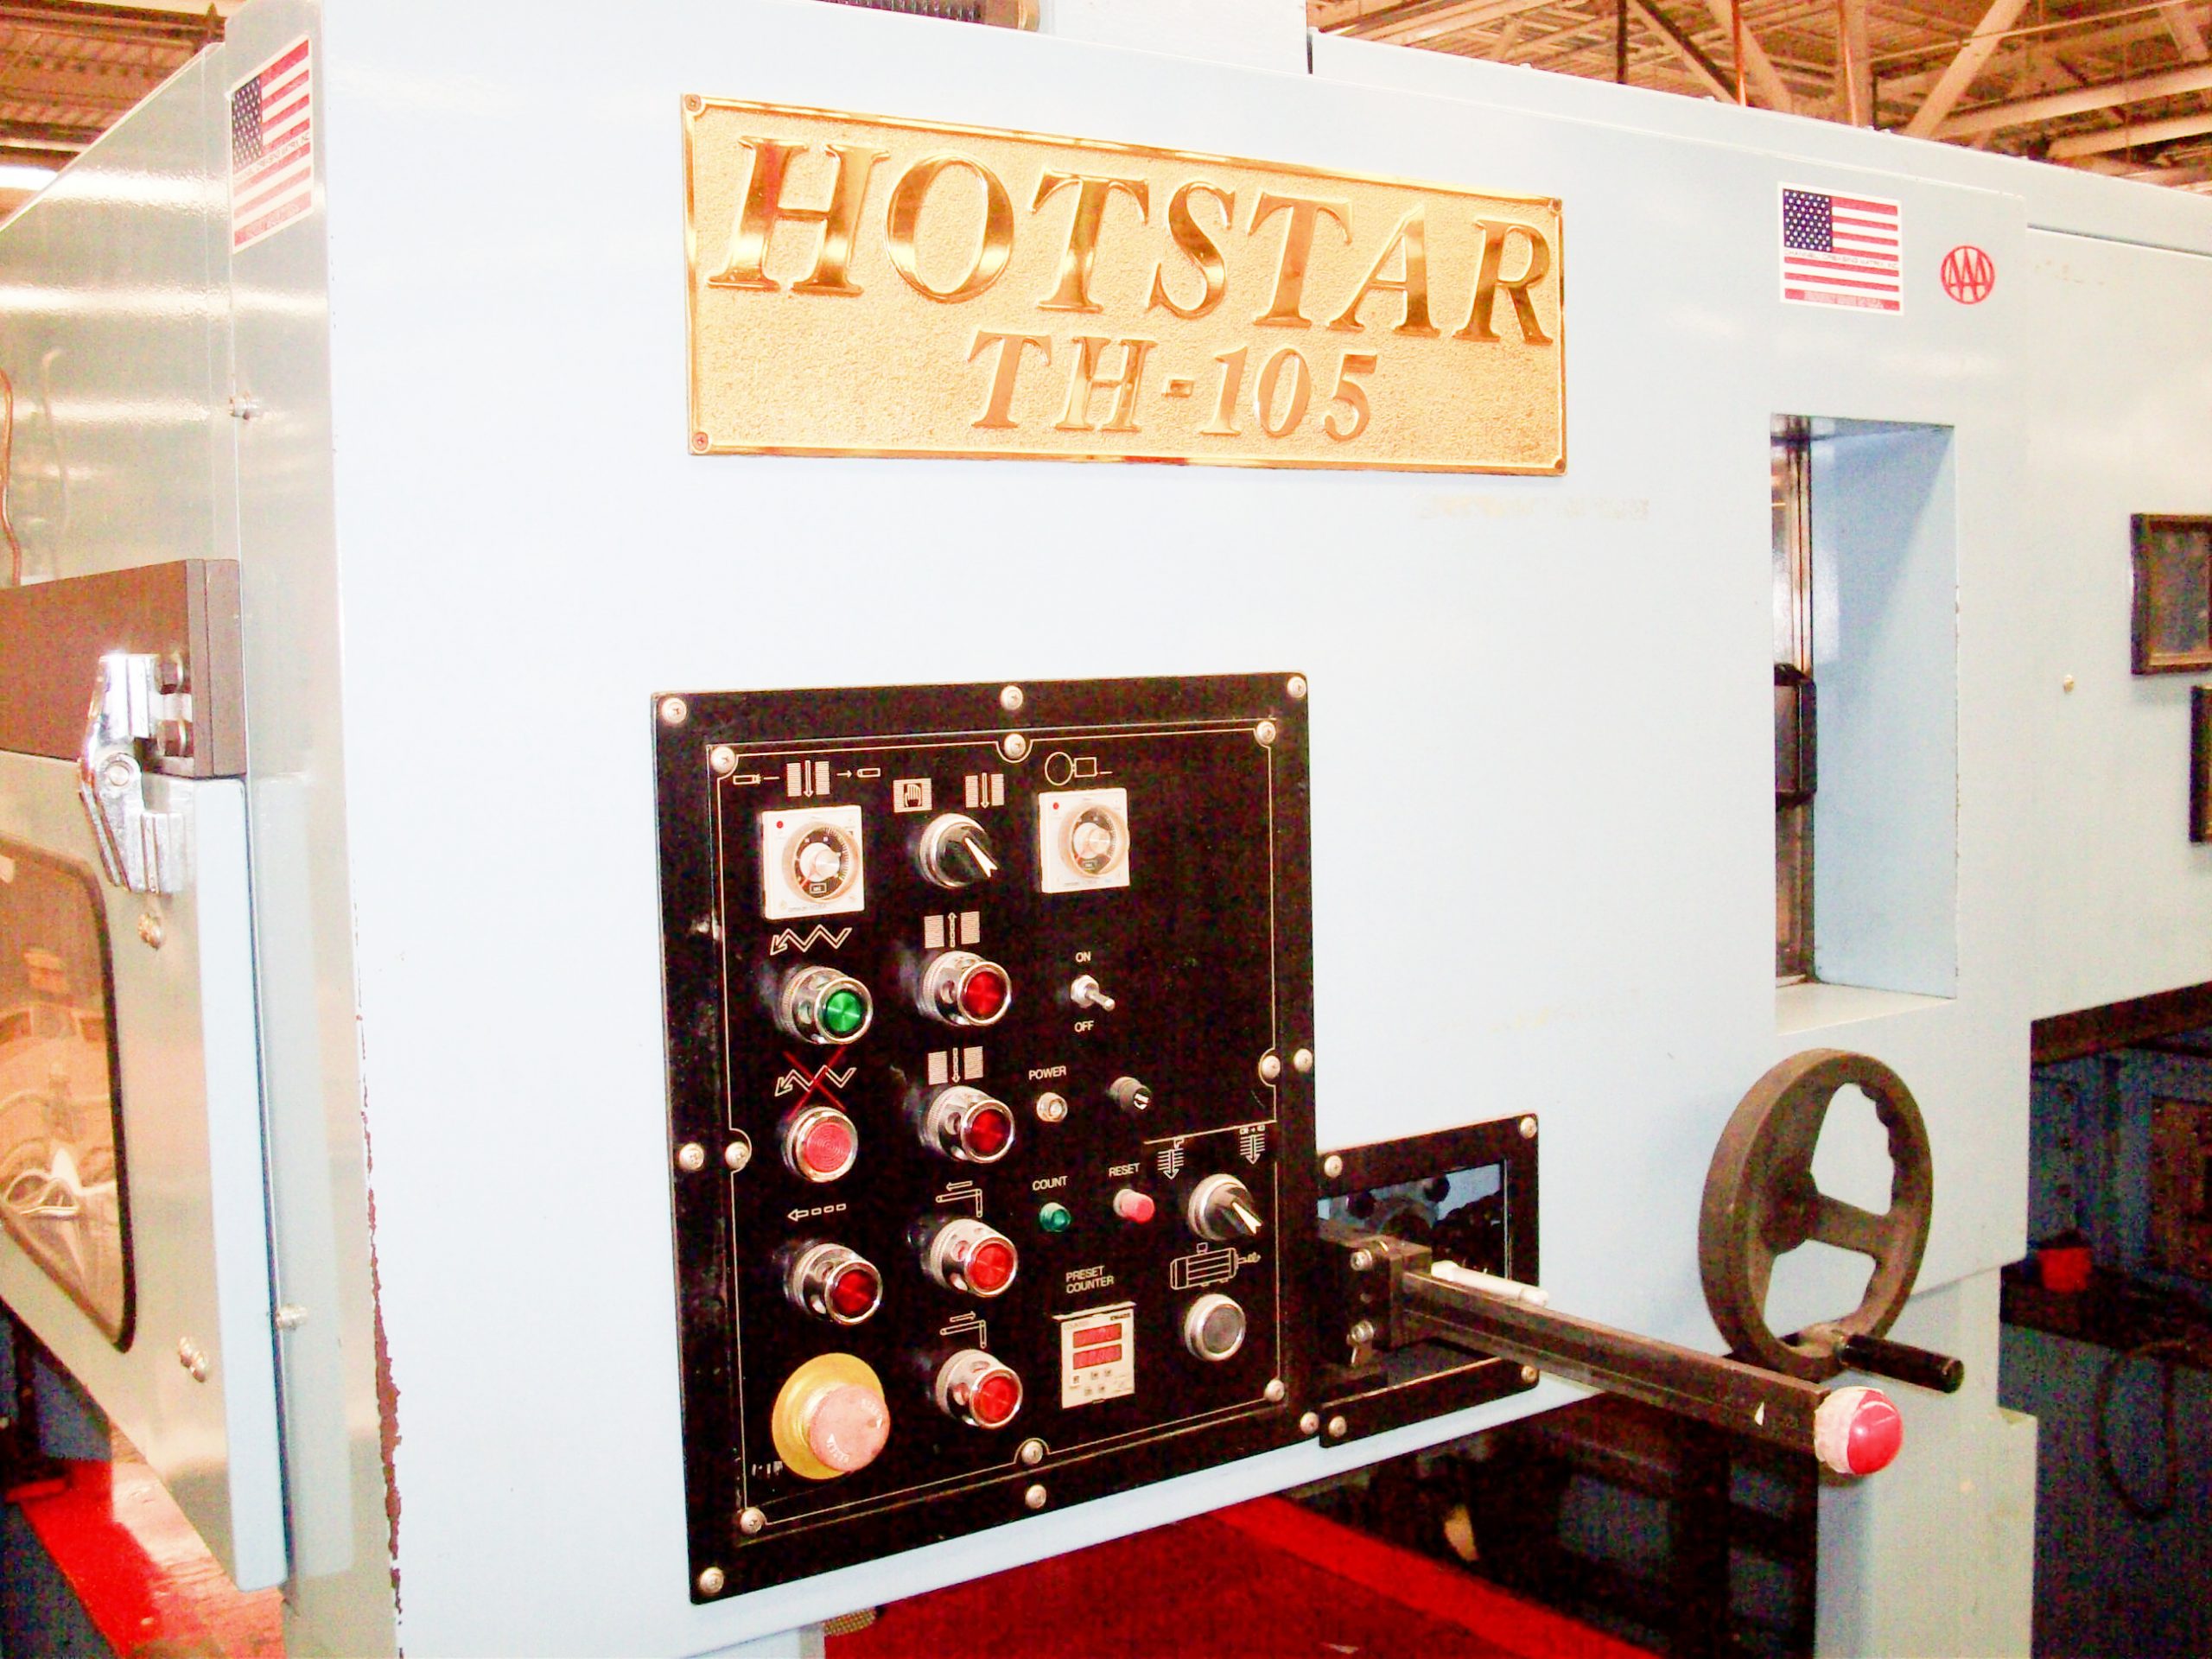 HotStar Nikko B105 Foil Stamper / Die Cutter (used) Item # UE-021122E (North Carolina)